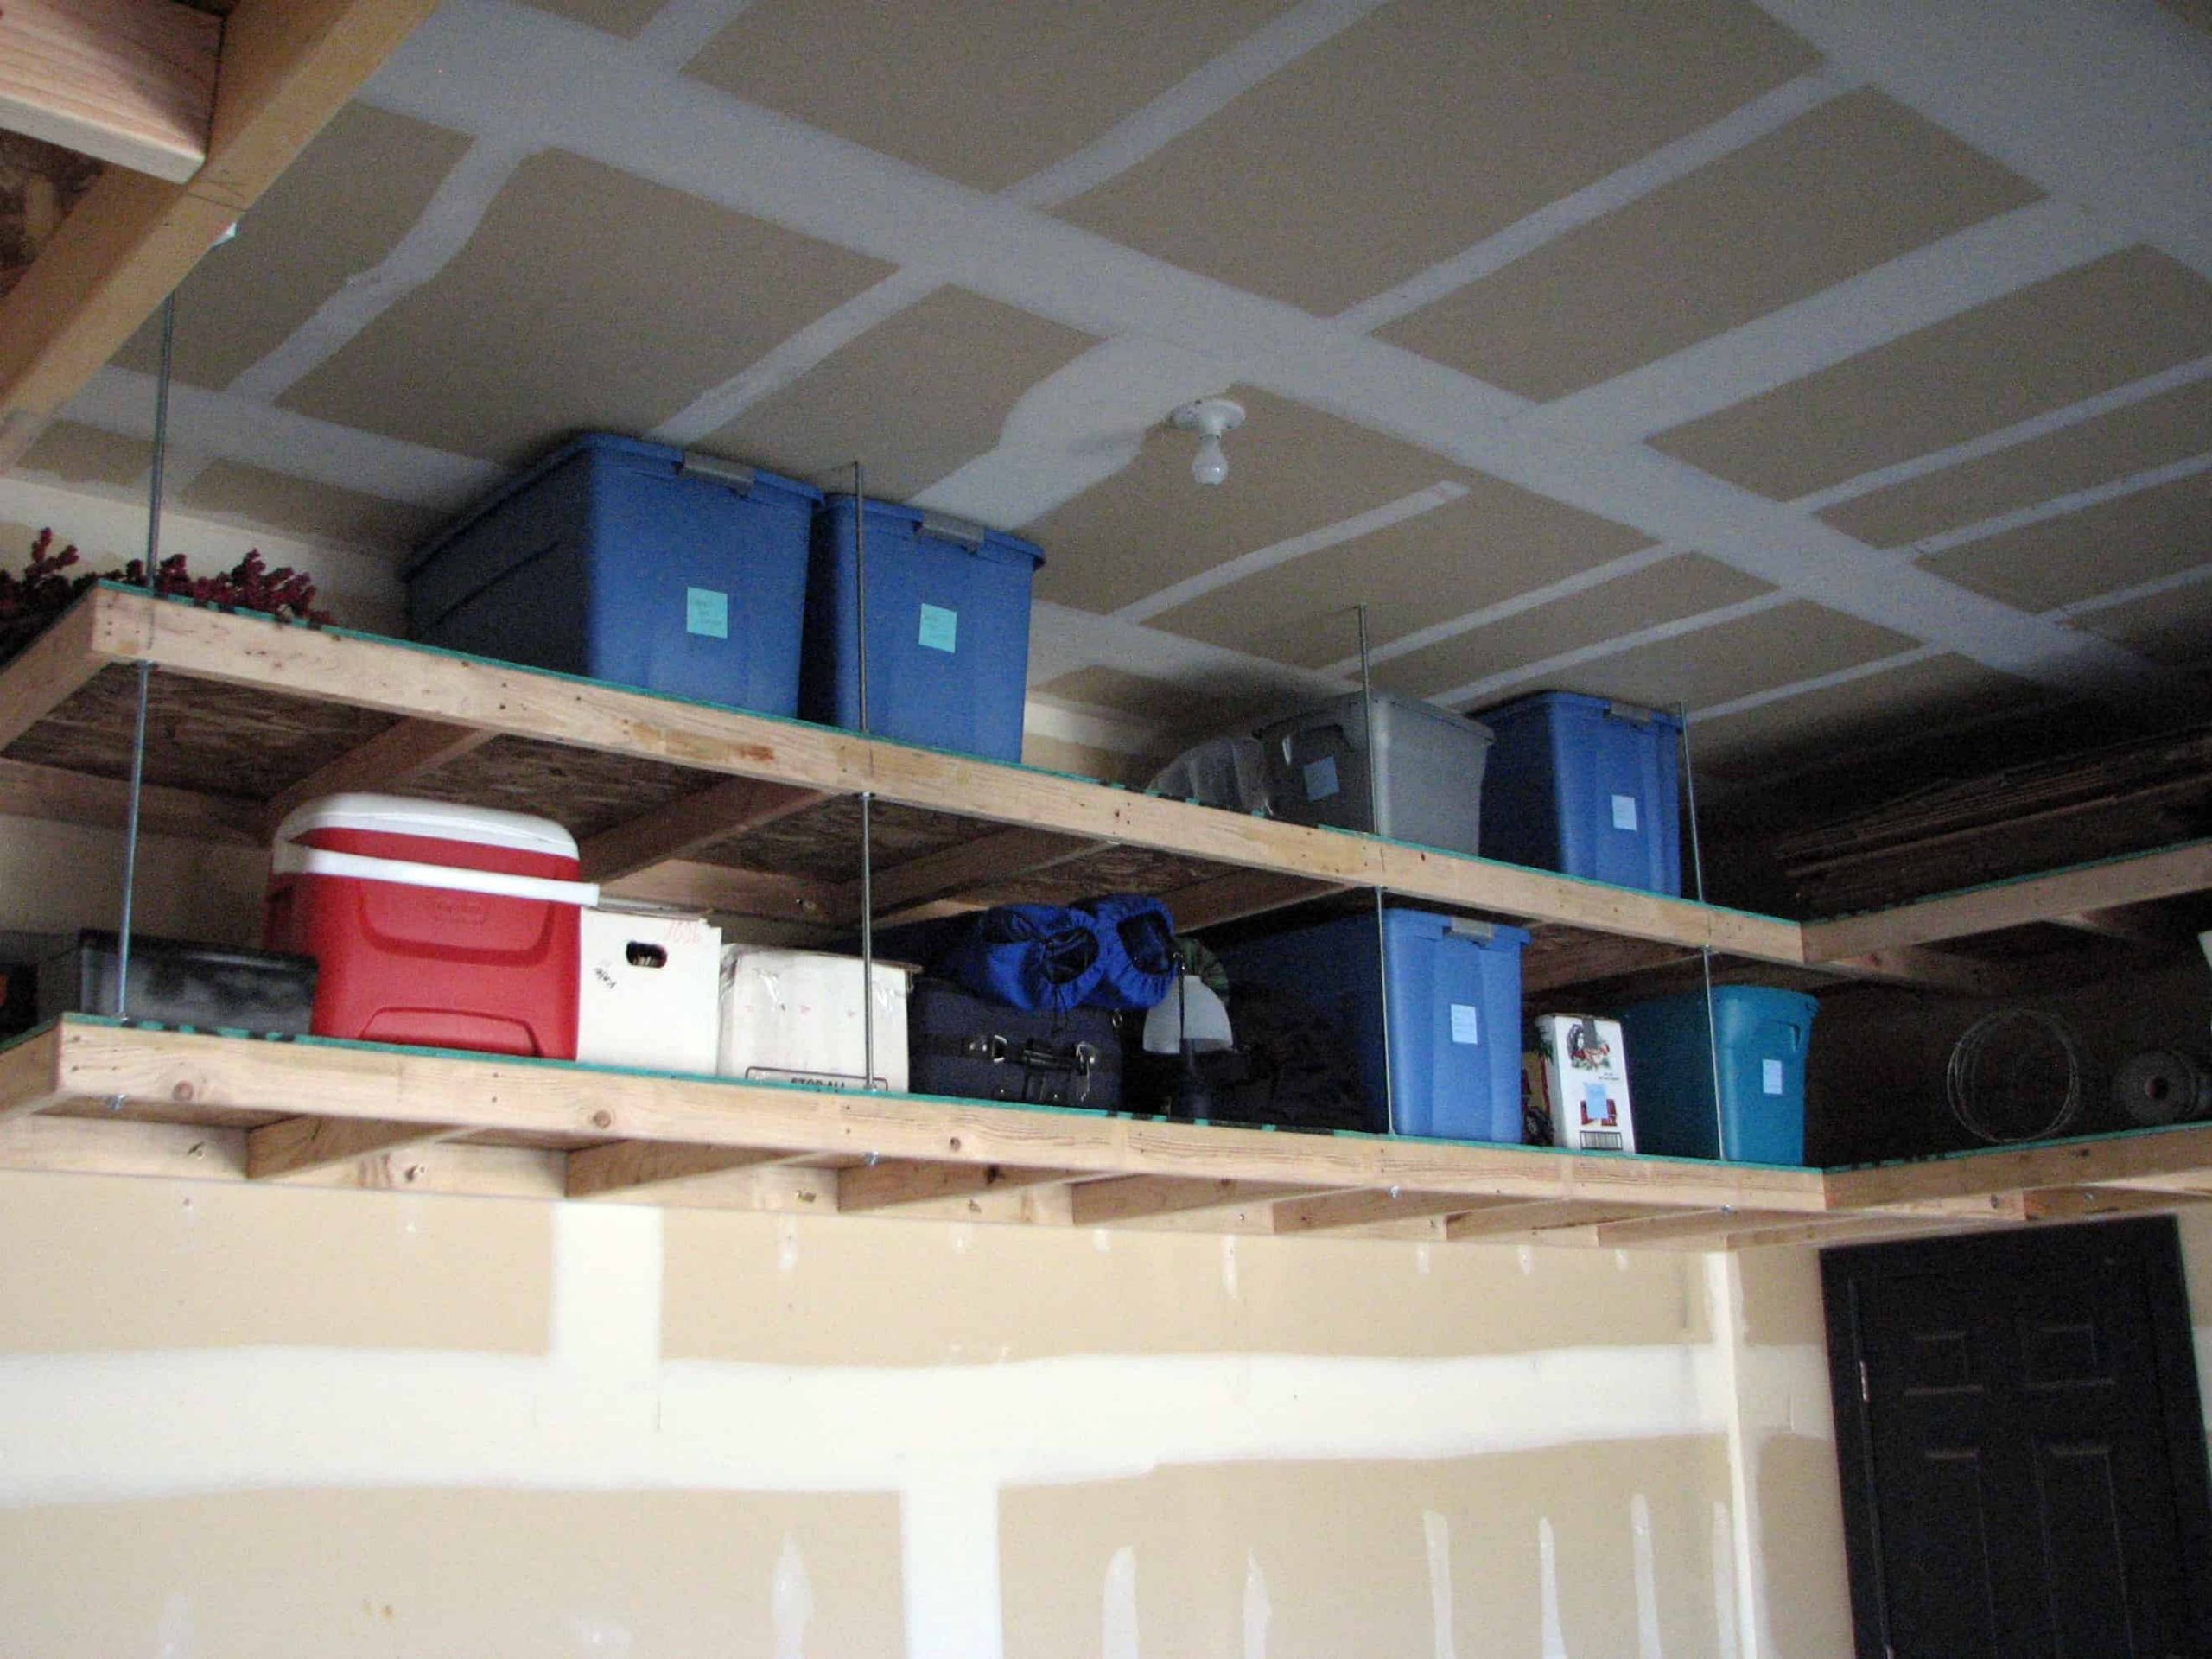 DIY Overhead Garage Storage Plans
 Genius Garage Organization Hacks